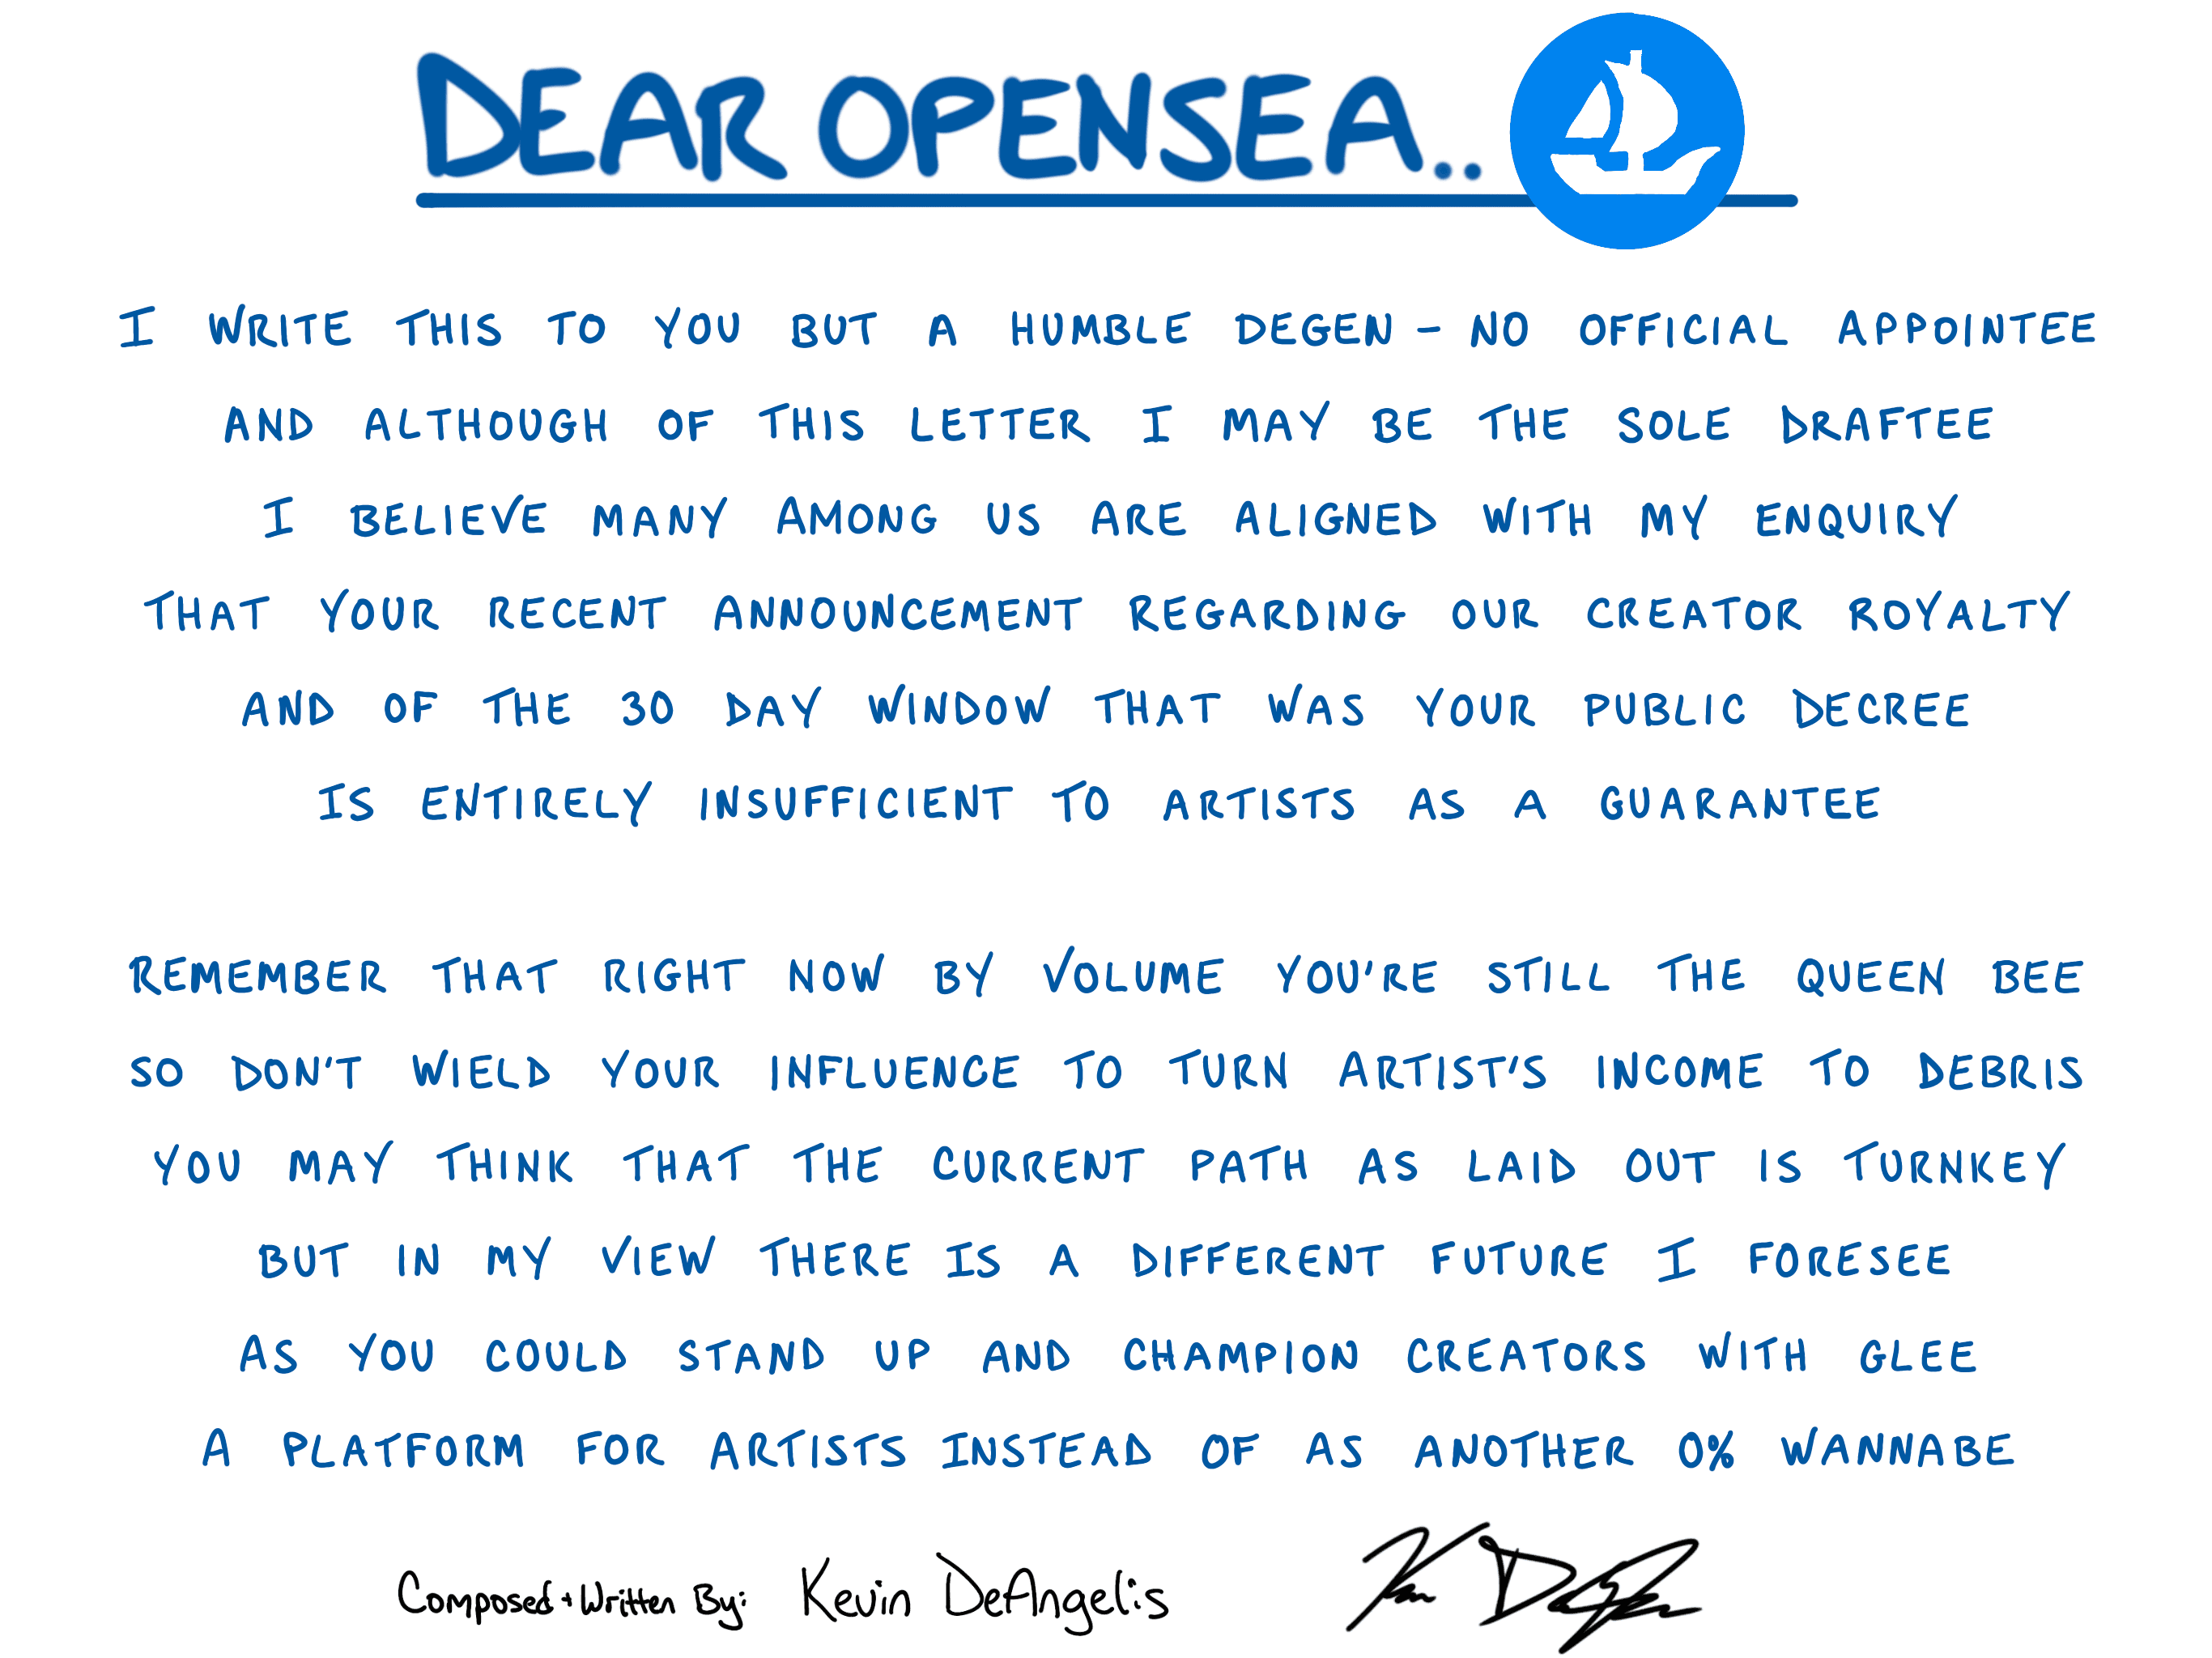 Dear OpenSea